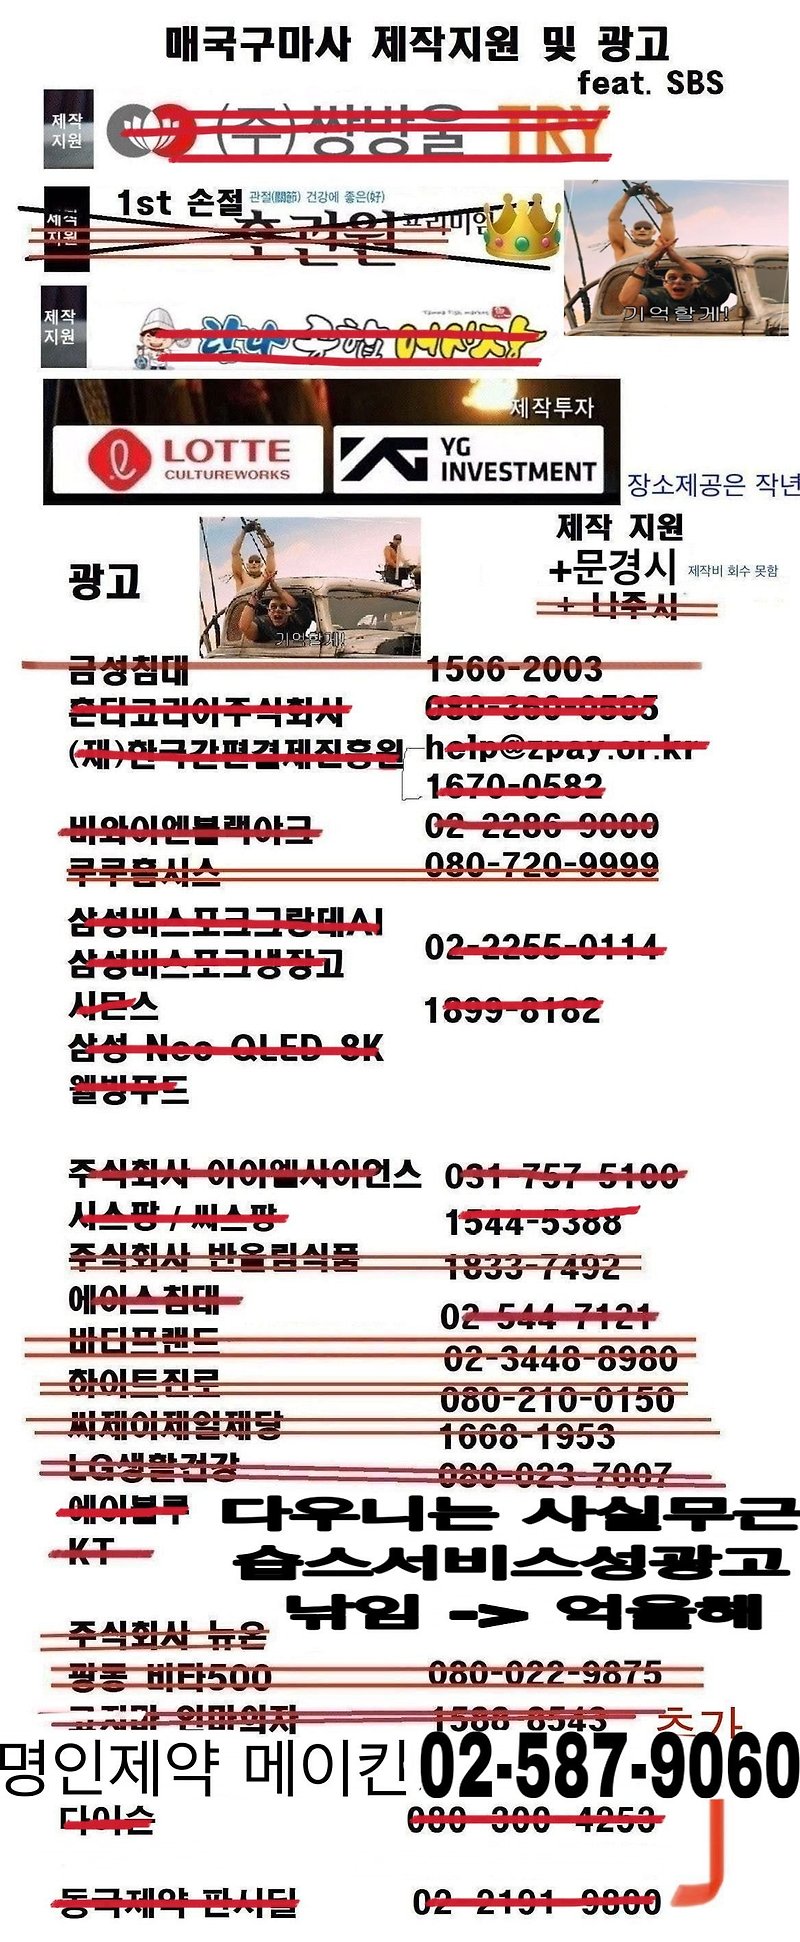 조선구마사 24시간전과 현재 상황 비교(feat 제작지원 및 광고) -> 짤 또 수정